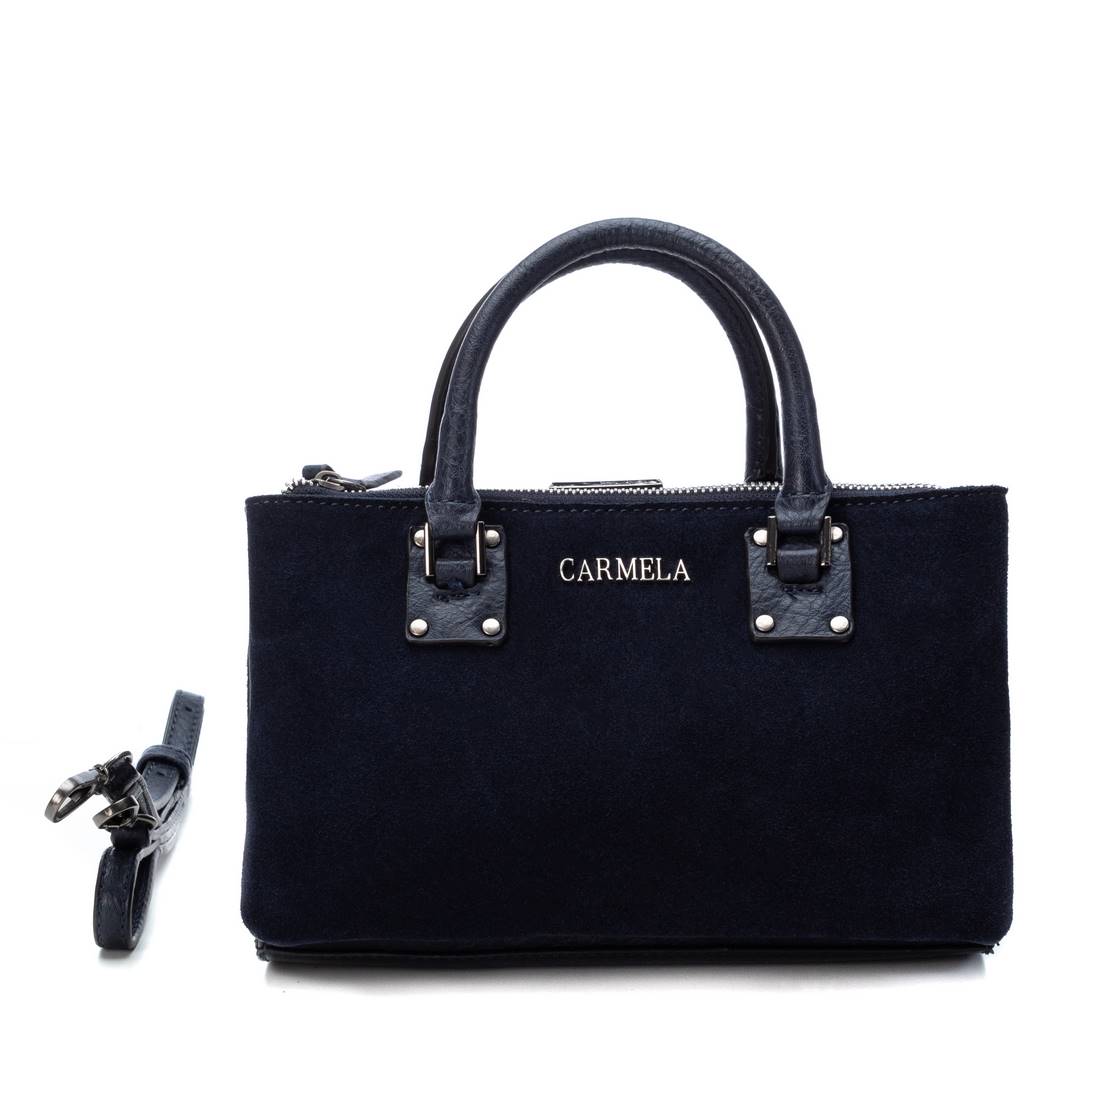 CARMELA WOMEN'S BAG 08639303